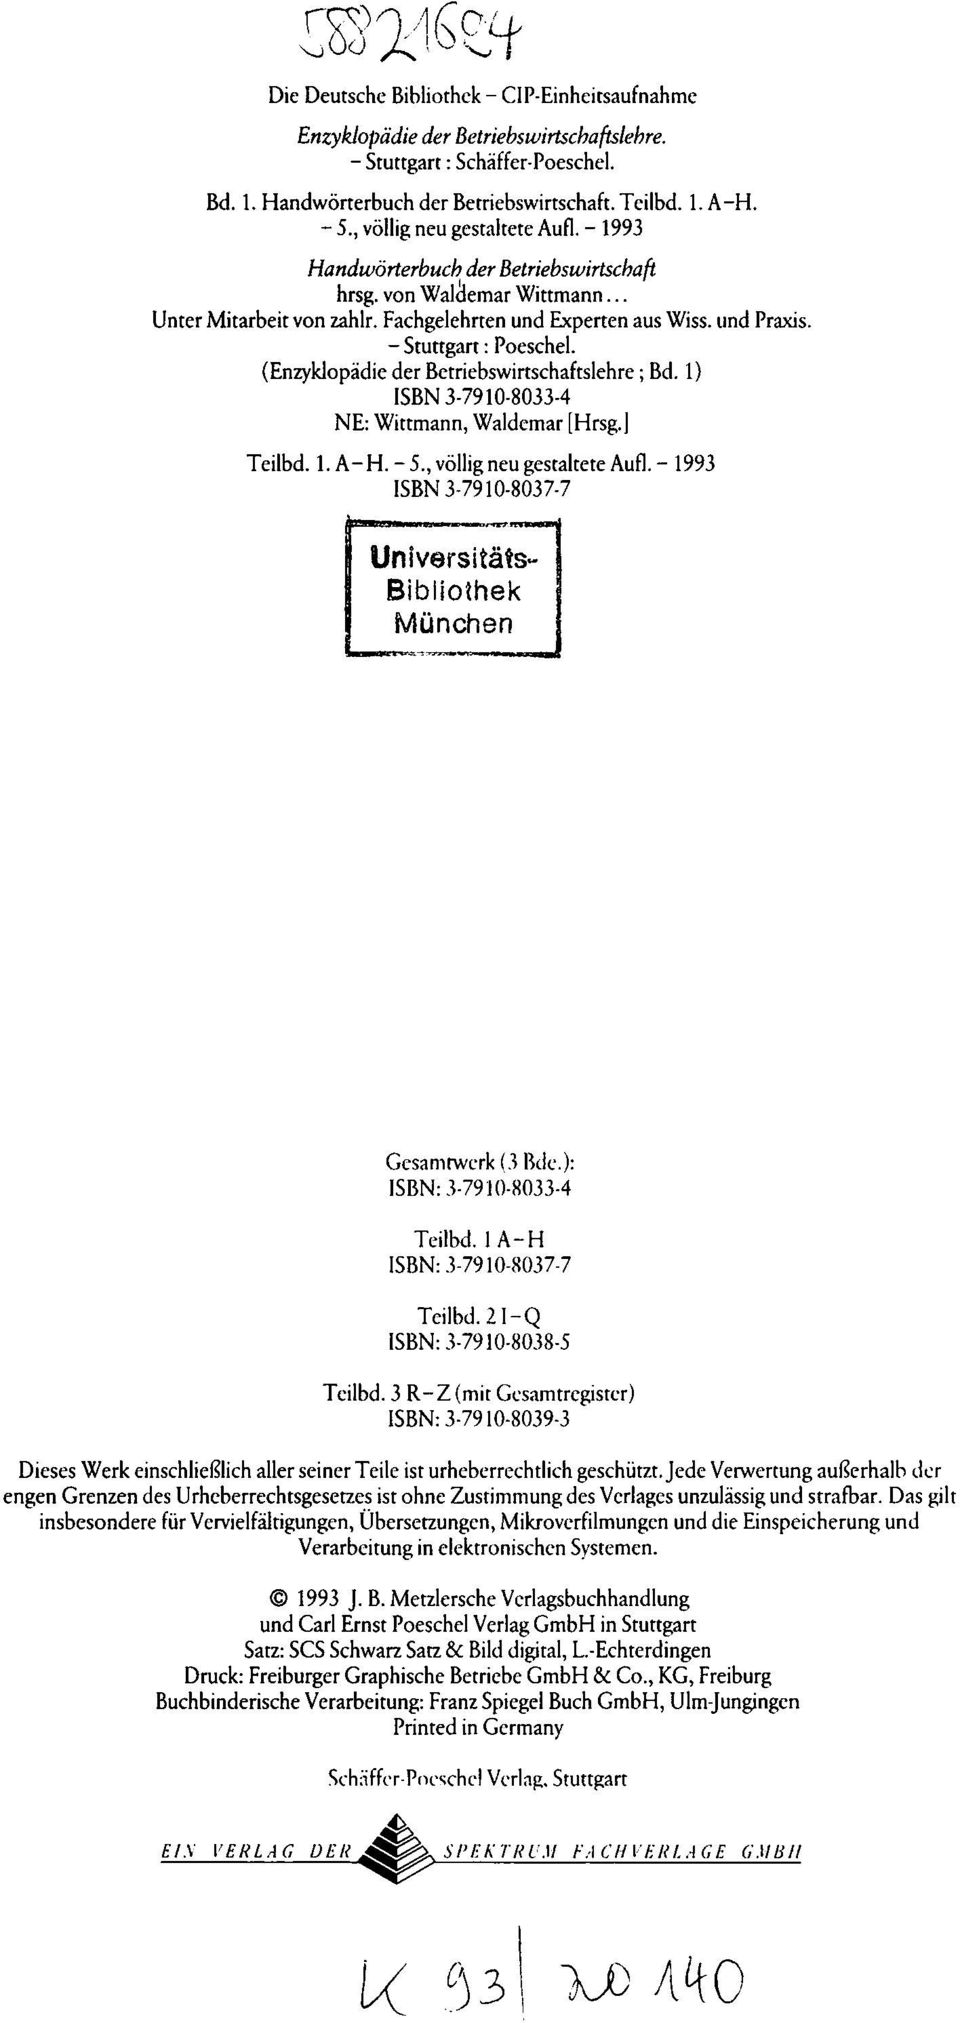 - Stuttgart : Poeschel. (Enzyklopädie der Betriebswirtschaftslehre ; Bd. 1) ISBN 3-7910-8033-4 NE: Wittmann, Waldemar [Hrsg.] Teilbd. 1. A-H. - 5., völlig neu gestaltete Aufl.